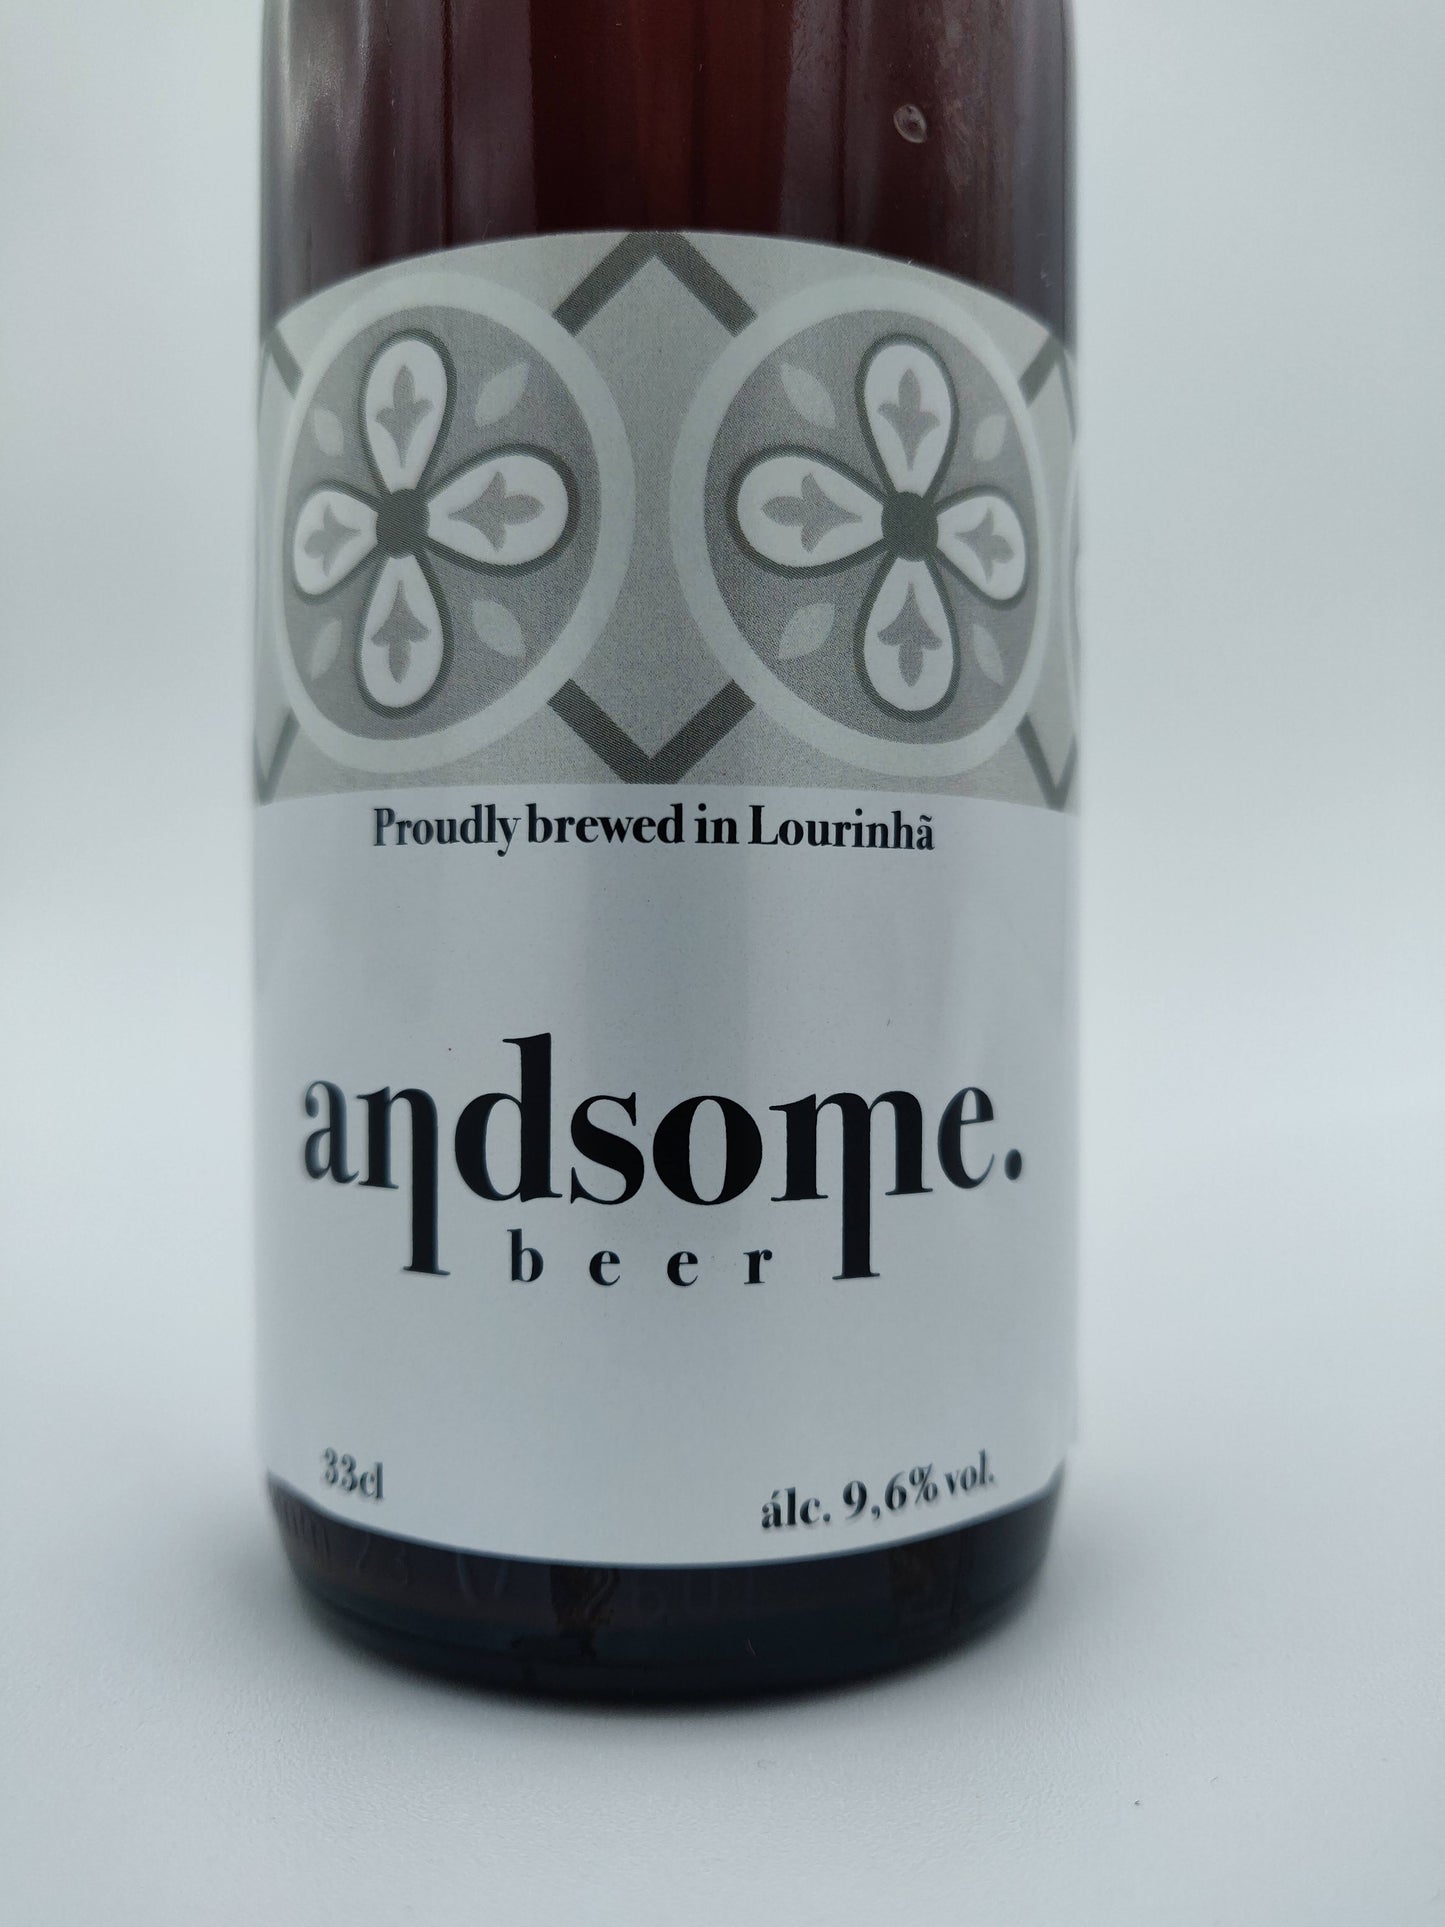 andsome beer no 00 Belgium Monk